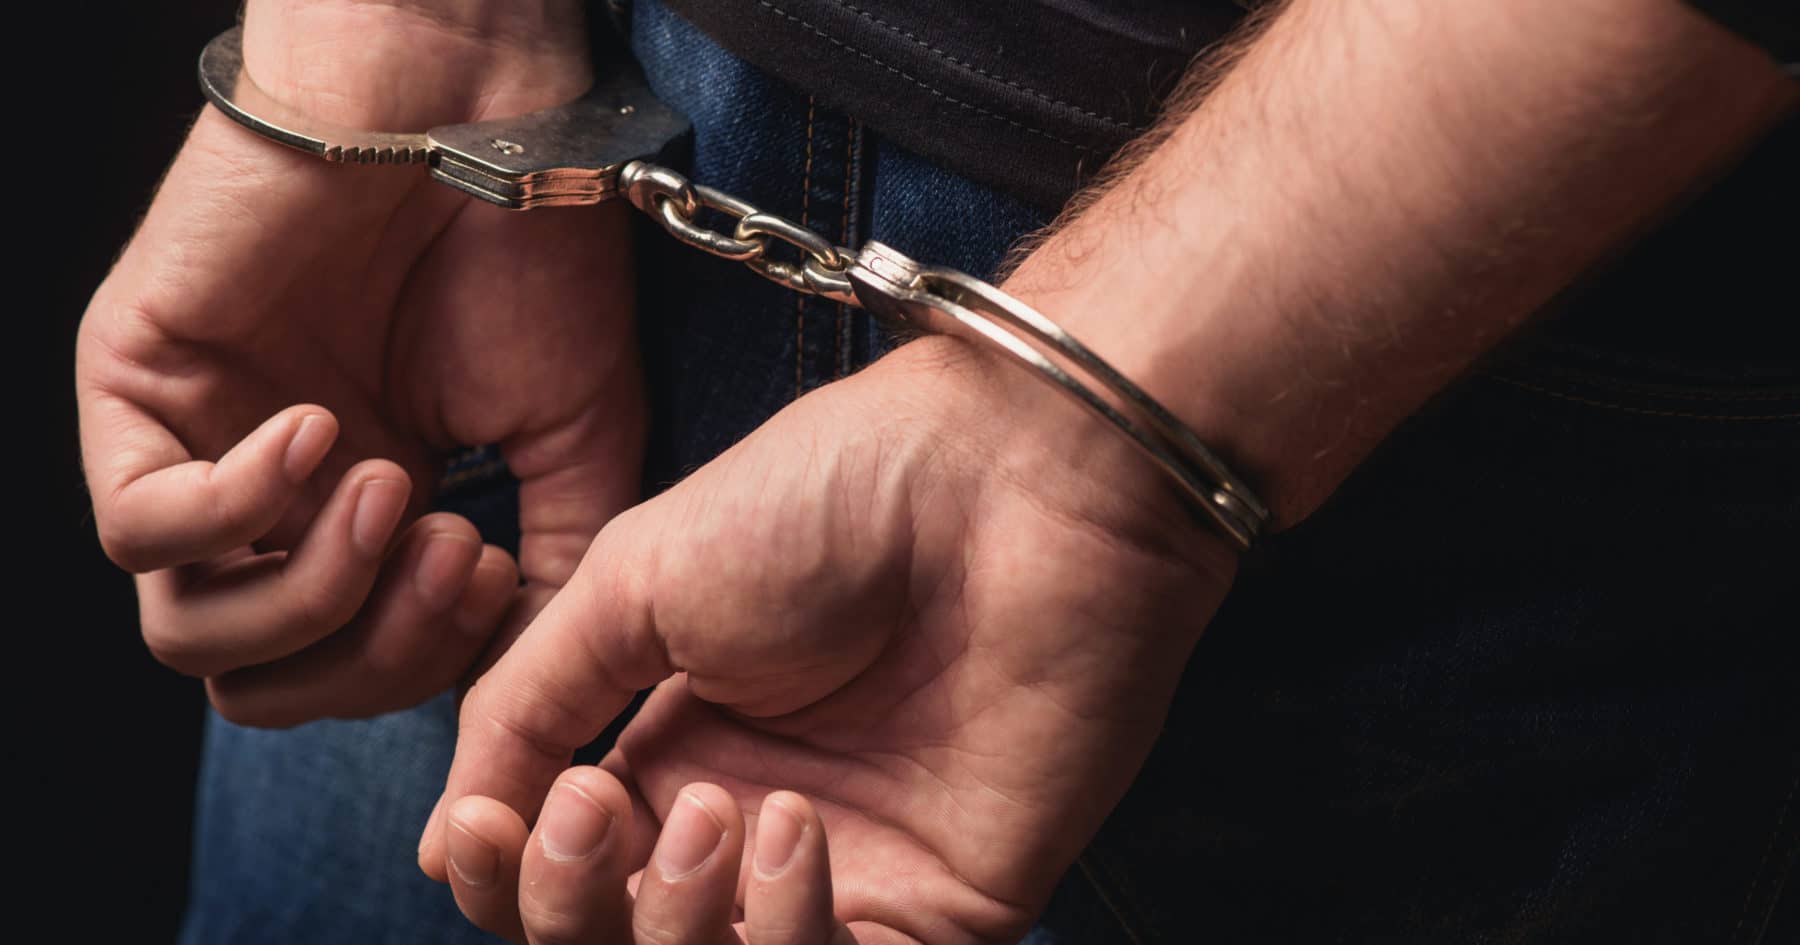 Арестованный в Армении по запросу белорусских силовиков гражданин Беларуси запросил политическое убежище